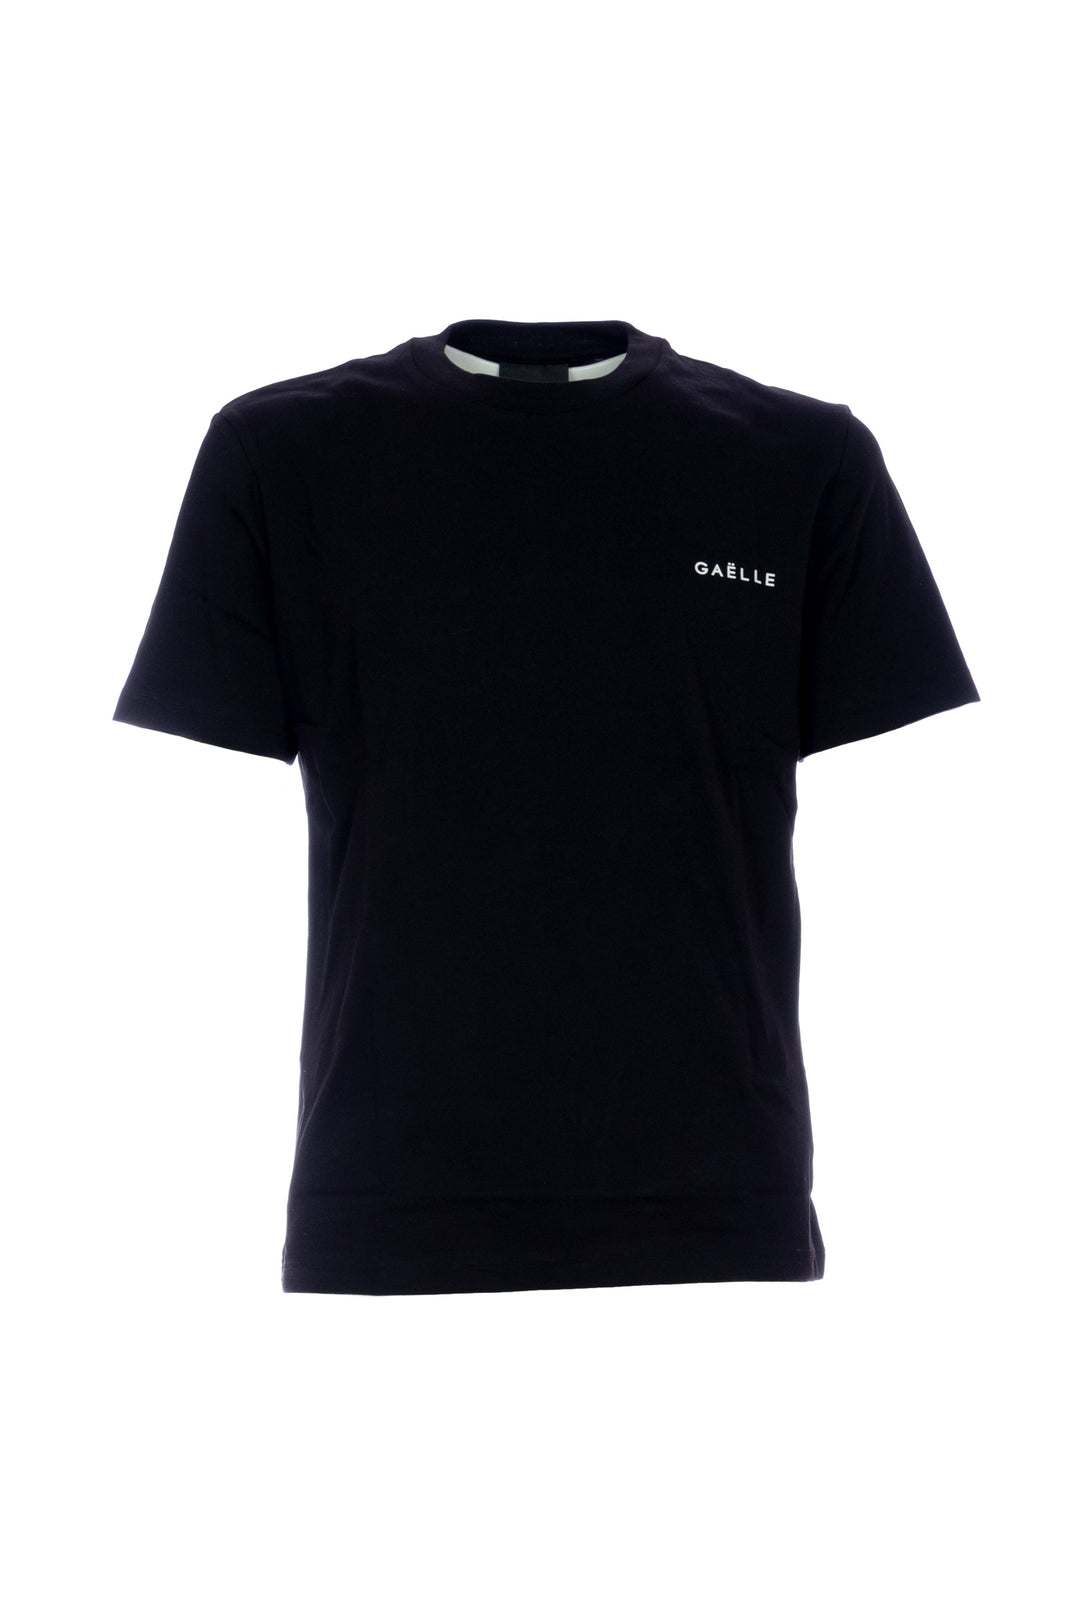 GAELLE T-shirt nera in jersey di cotone con logo sul petto - Mancinelli 1954